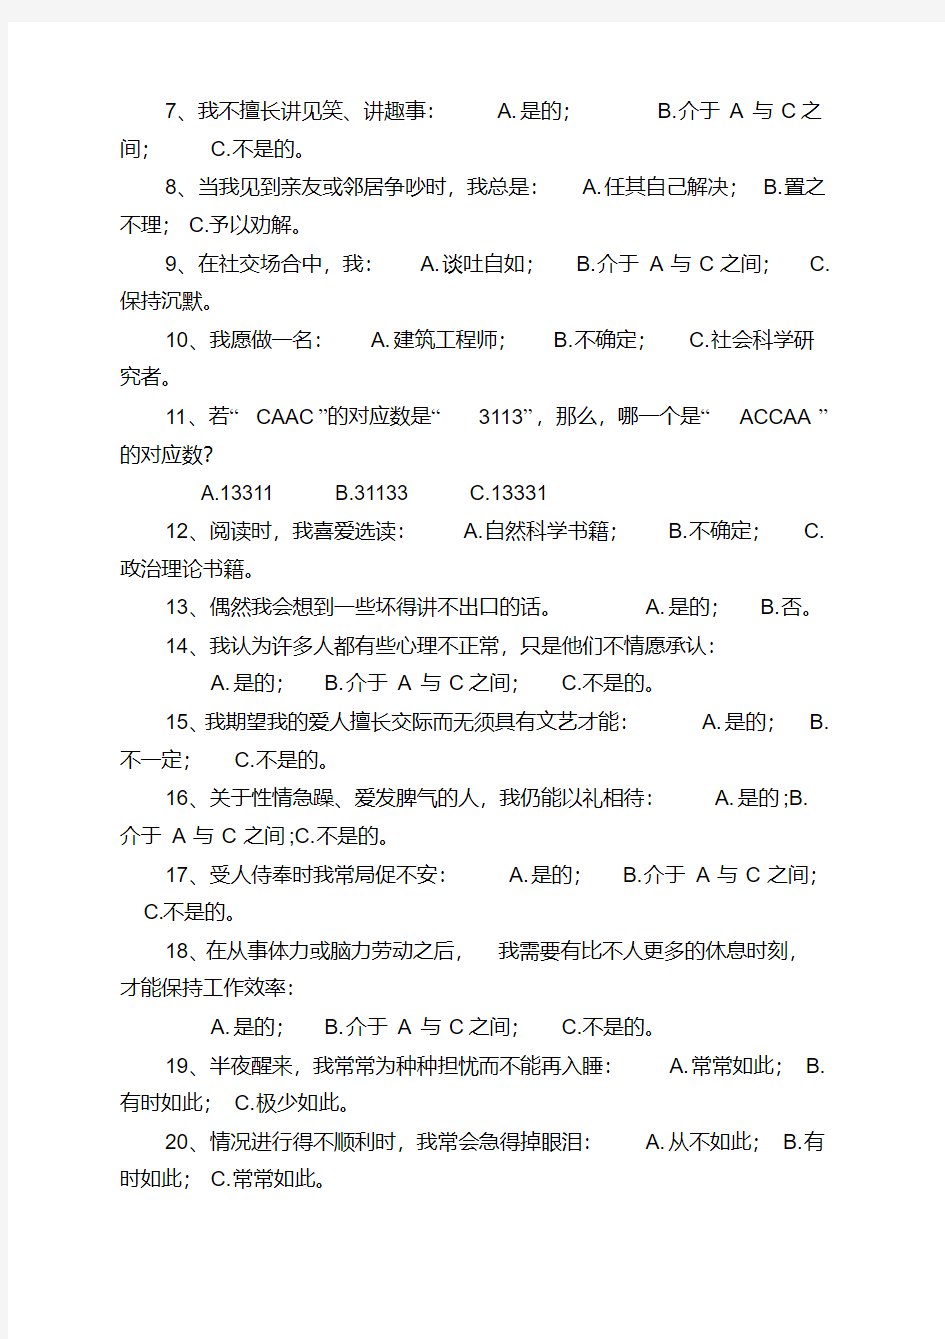 中国南方人才市场测评中心测评问卷